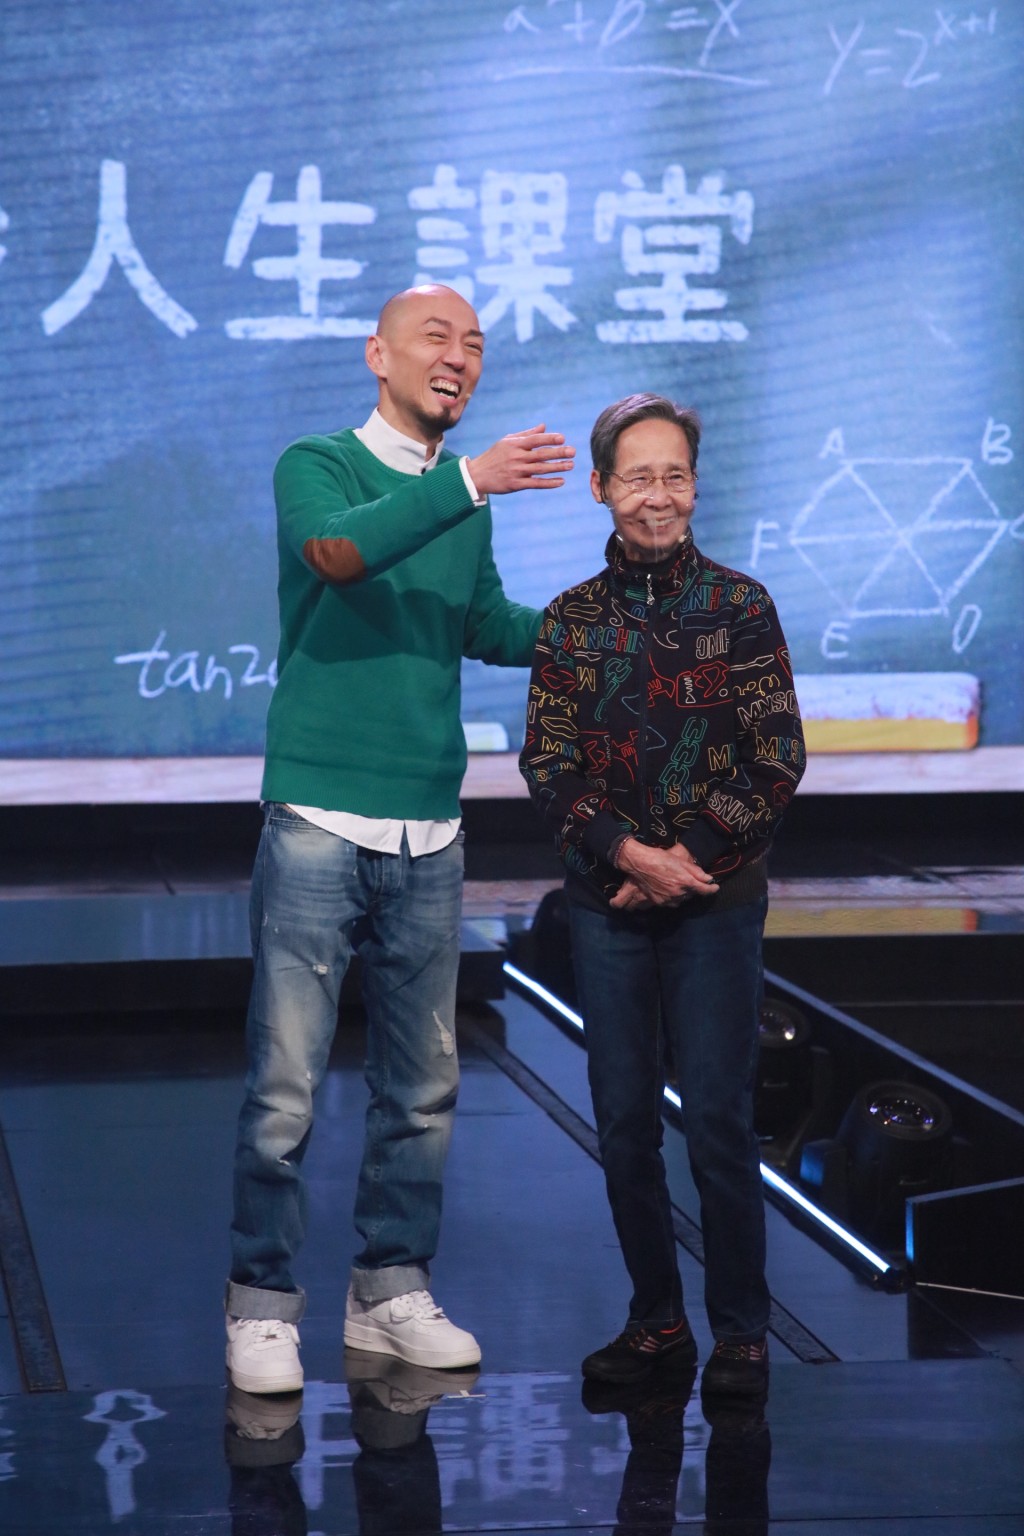 戴耀明加入TVB逾30年，去年參加節目《360秒人生課堂》，戴媽媽驚喜現身，母子更圓夢參觀電視城。